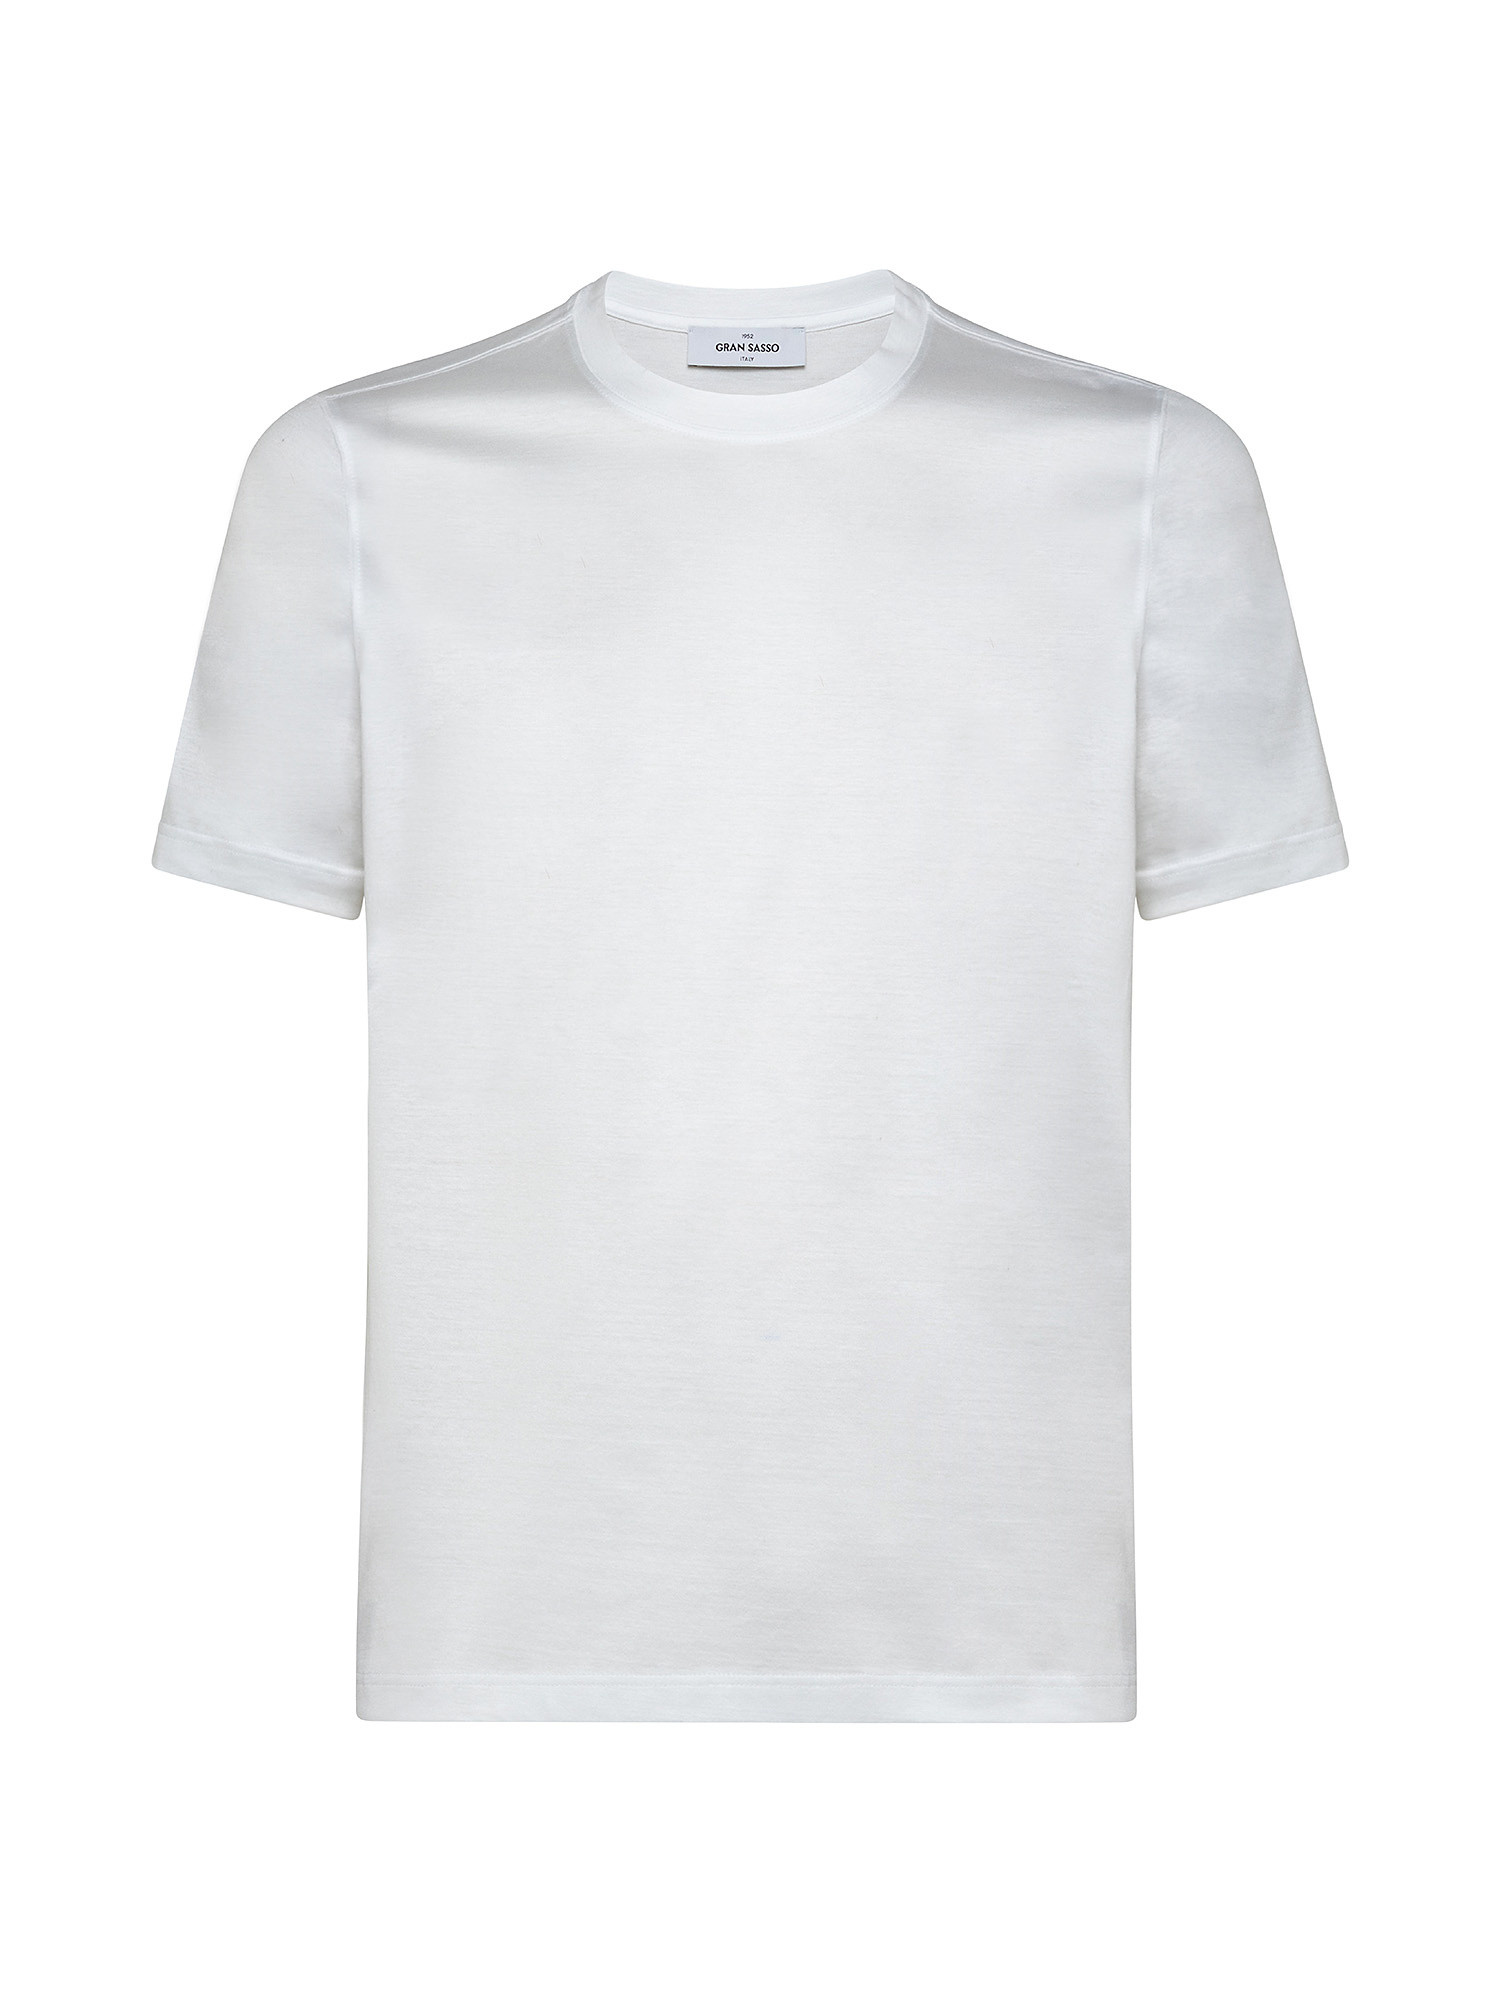 Short sleeve crew neck T-shirt, White, large image number 0